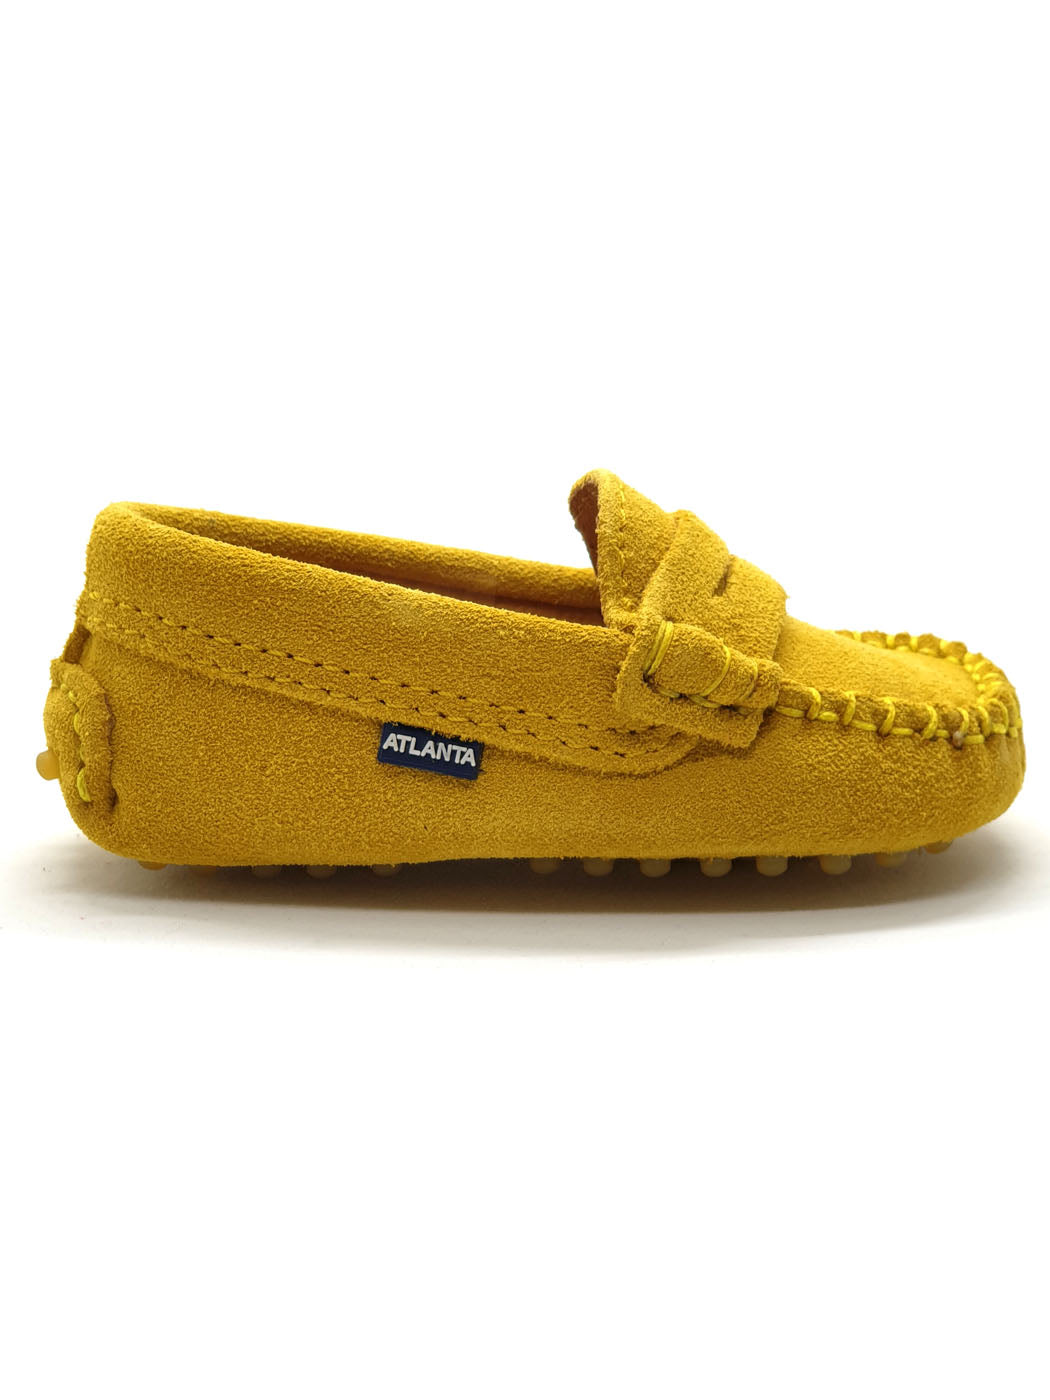 Atlanta Mocassin-Baby Shoes Moccasins Yellow-032B013